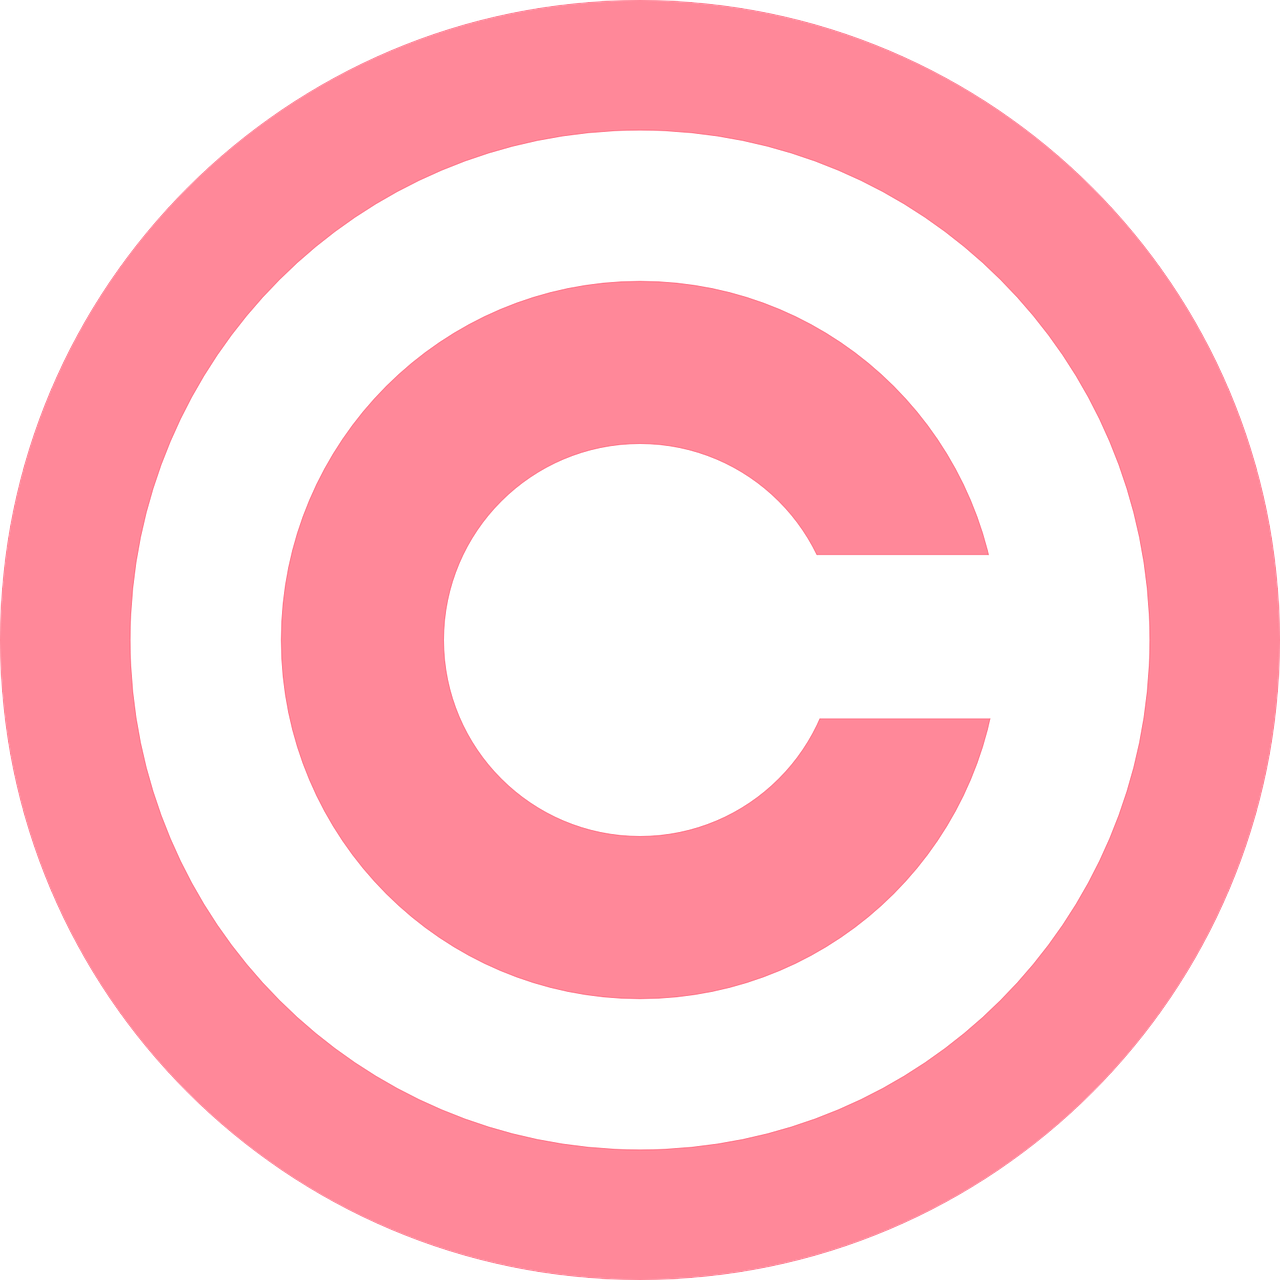 copyright symbol pink free photo